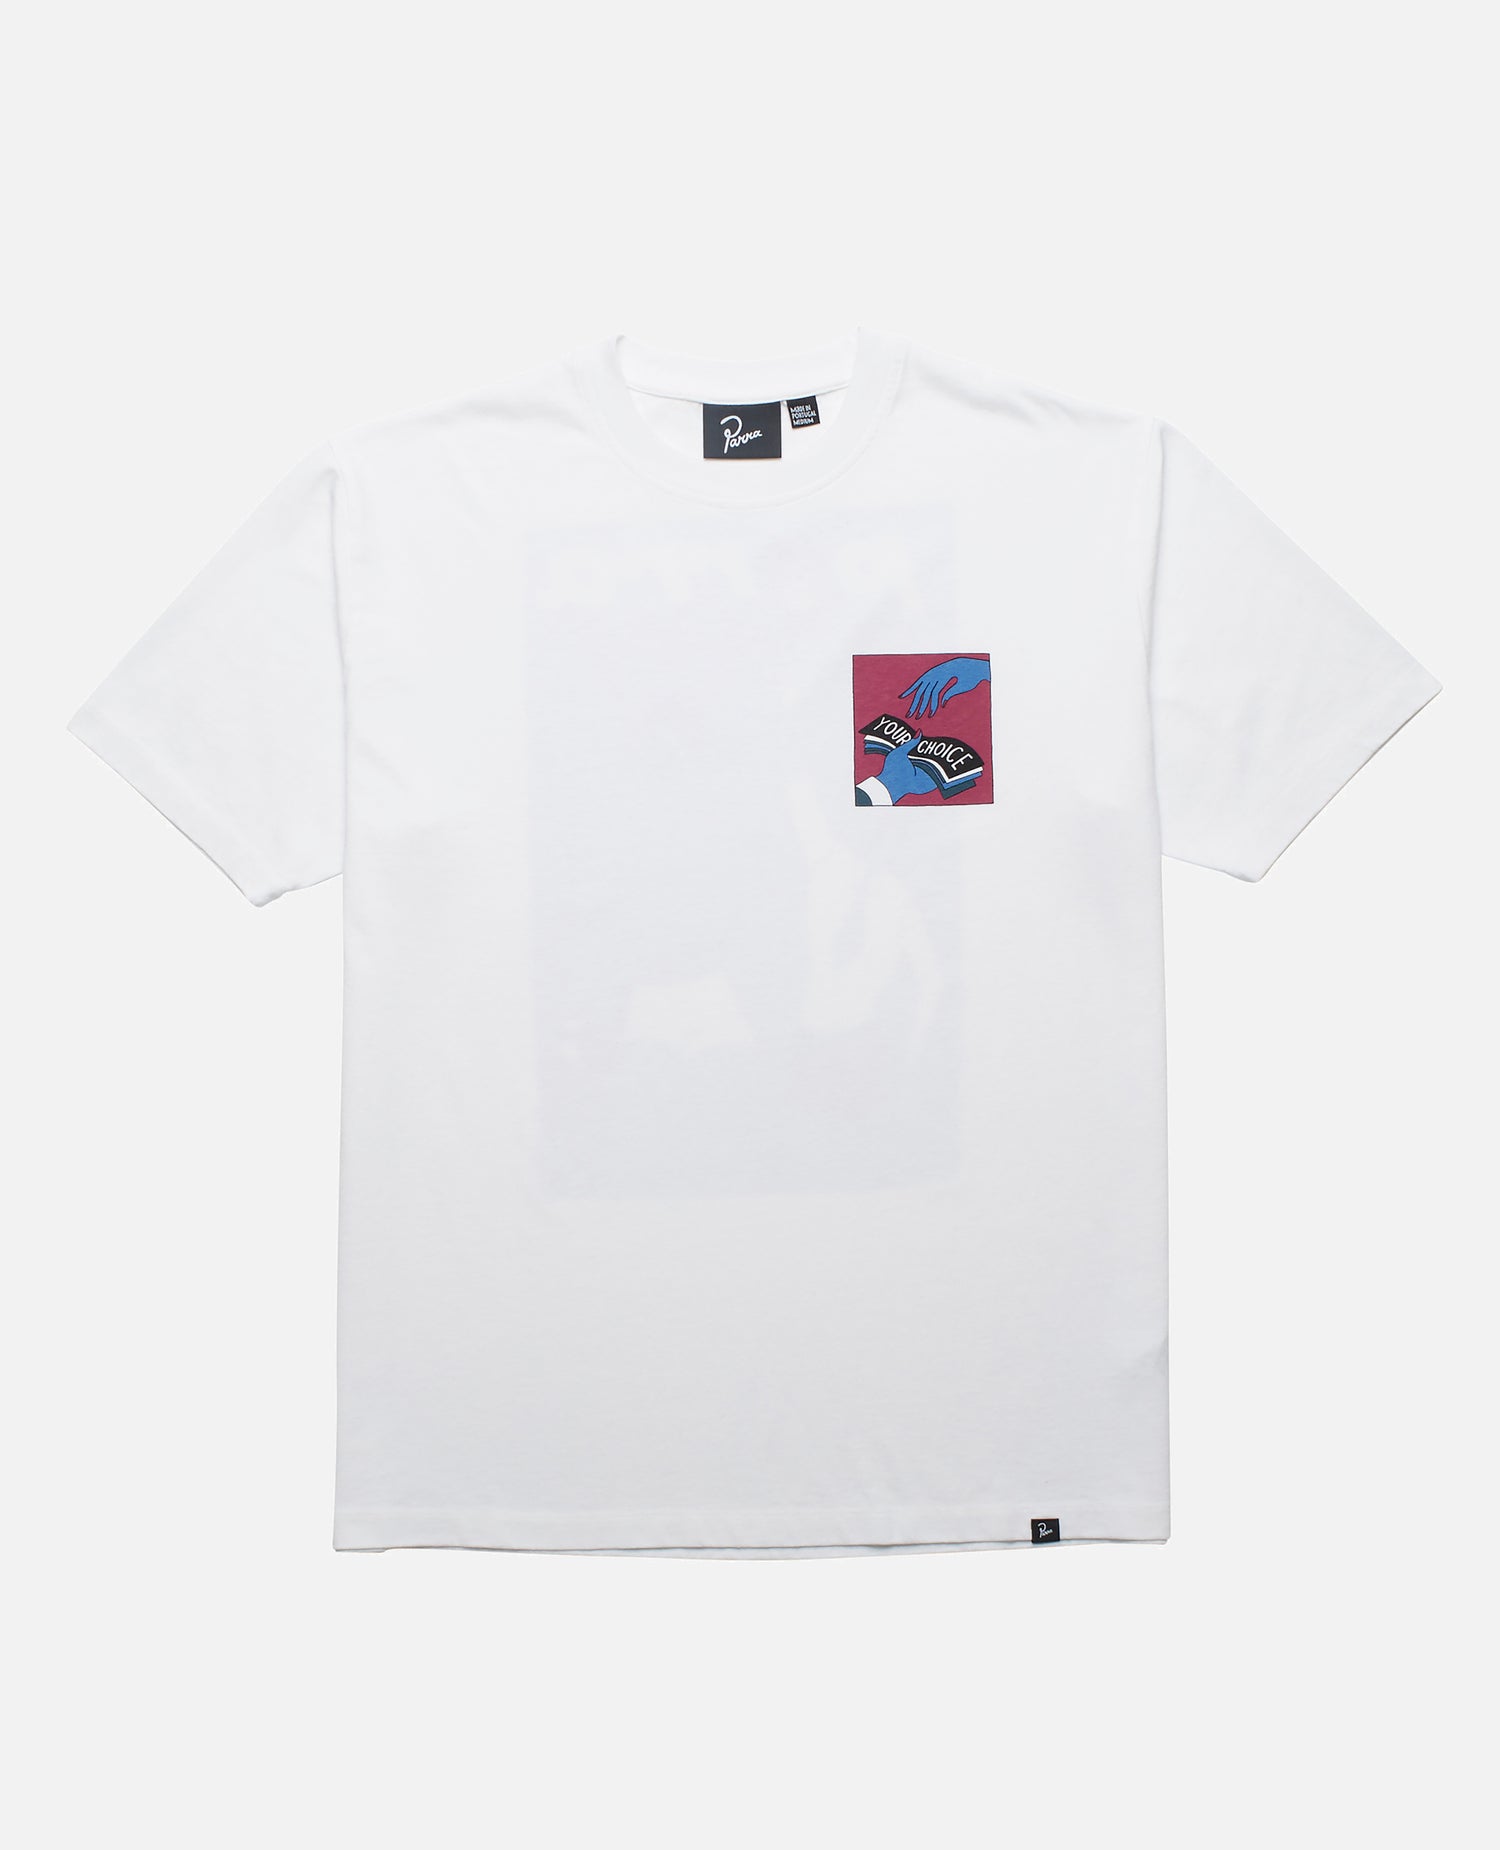 byParra Round 12 T-shirt (White)